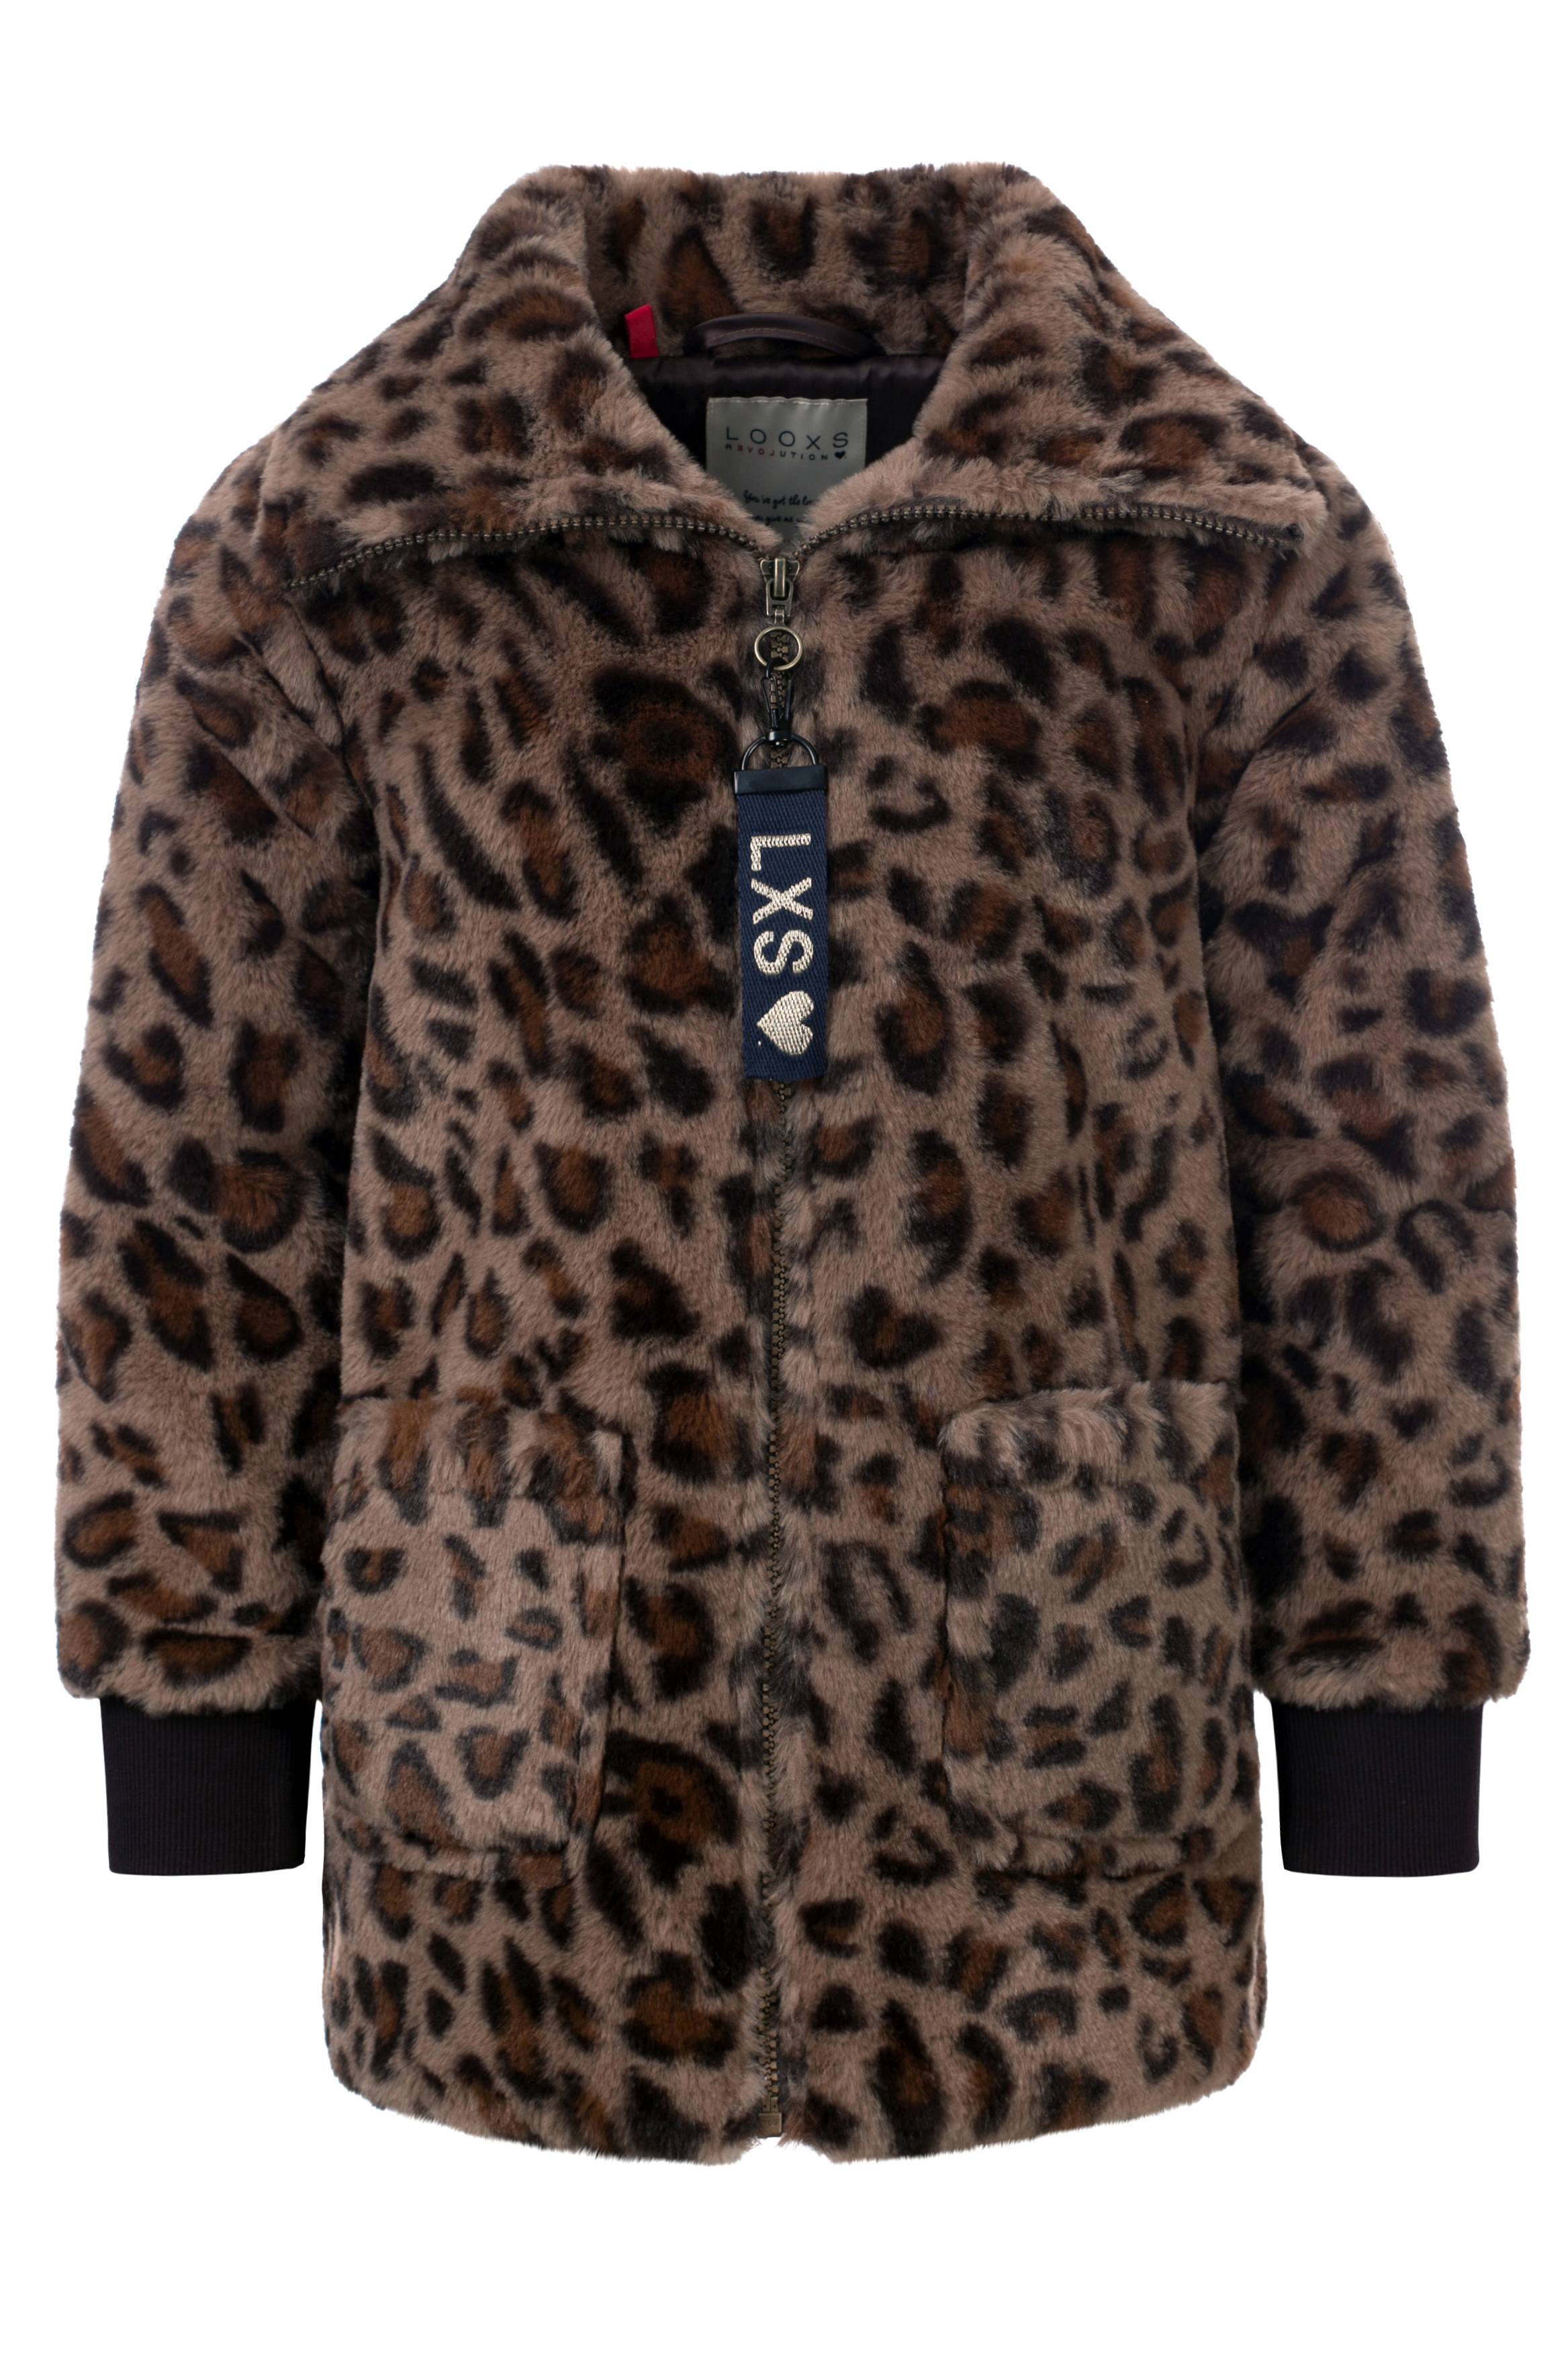 Meisjes Little fancy jacket van Looxs Little in de kleur Leopard AO in maat 128.